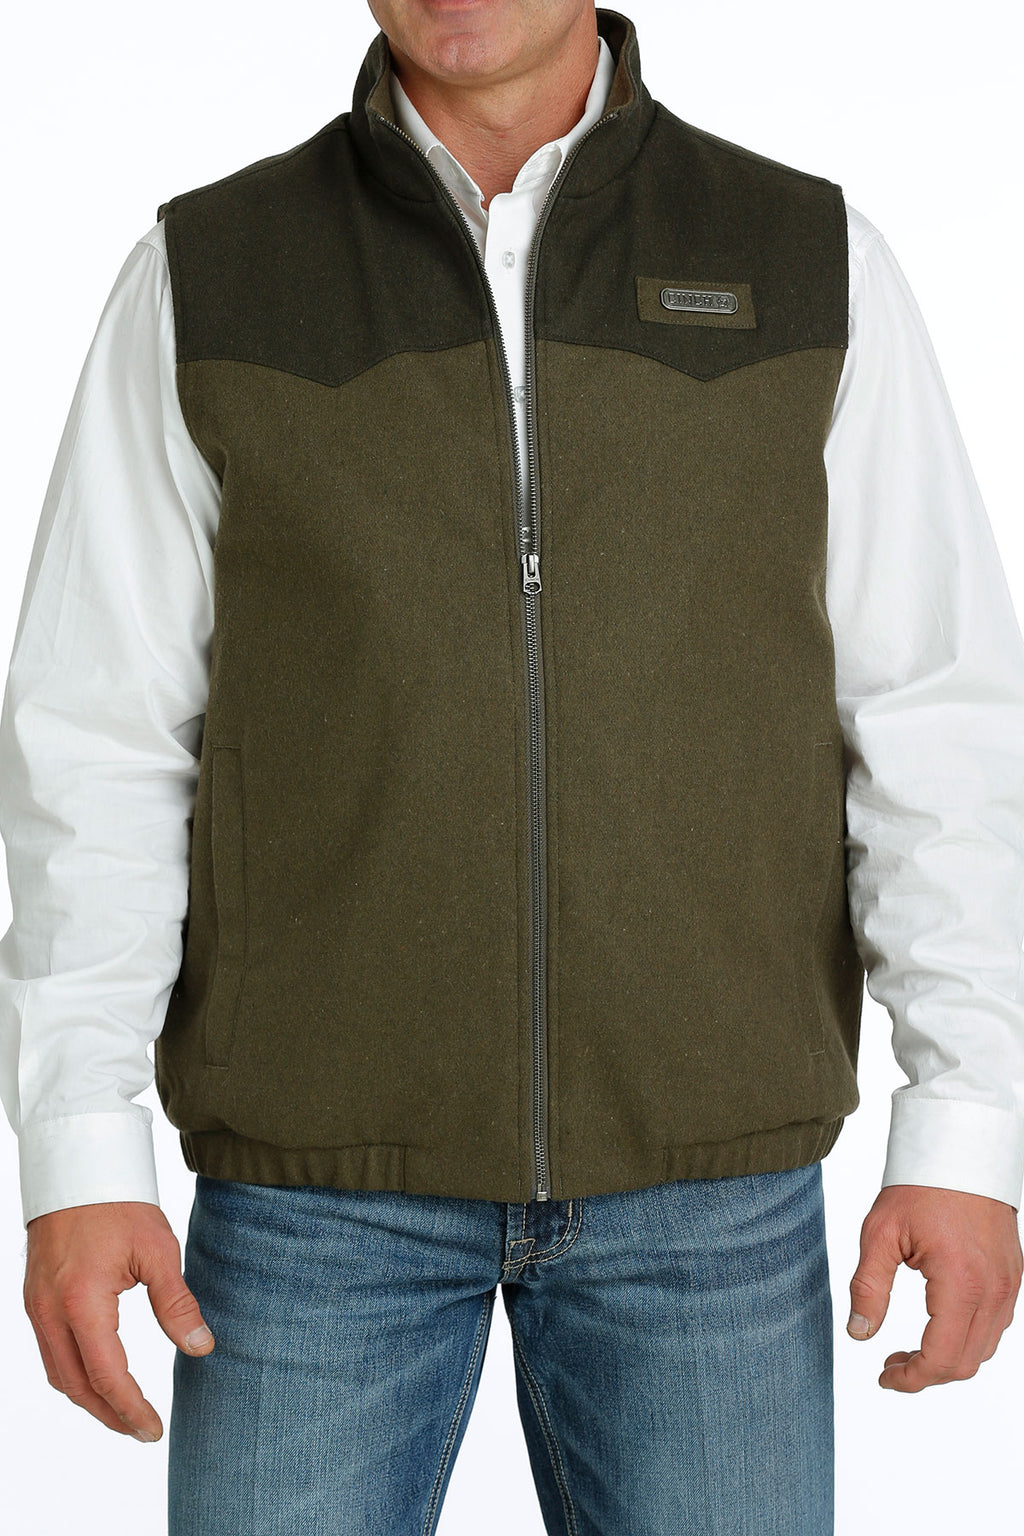 CINCH Men's Concealed Carry Wooly Vest